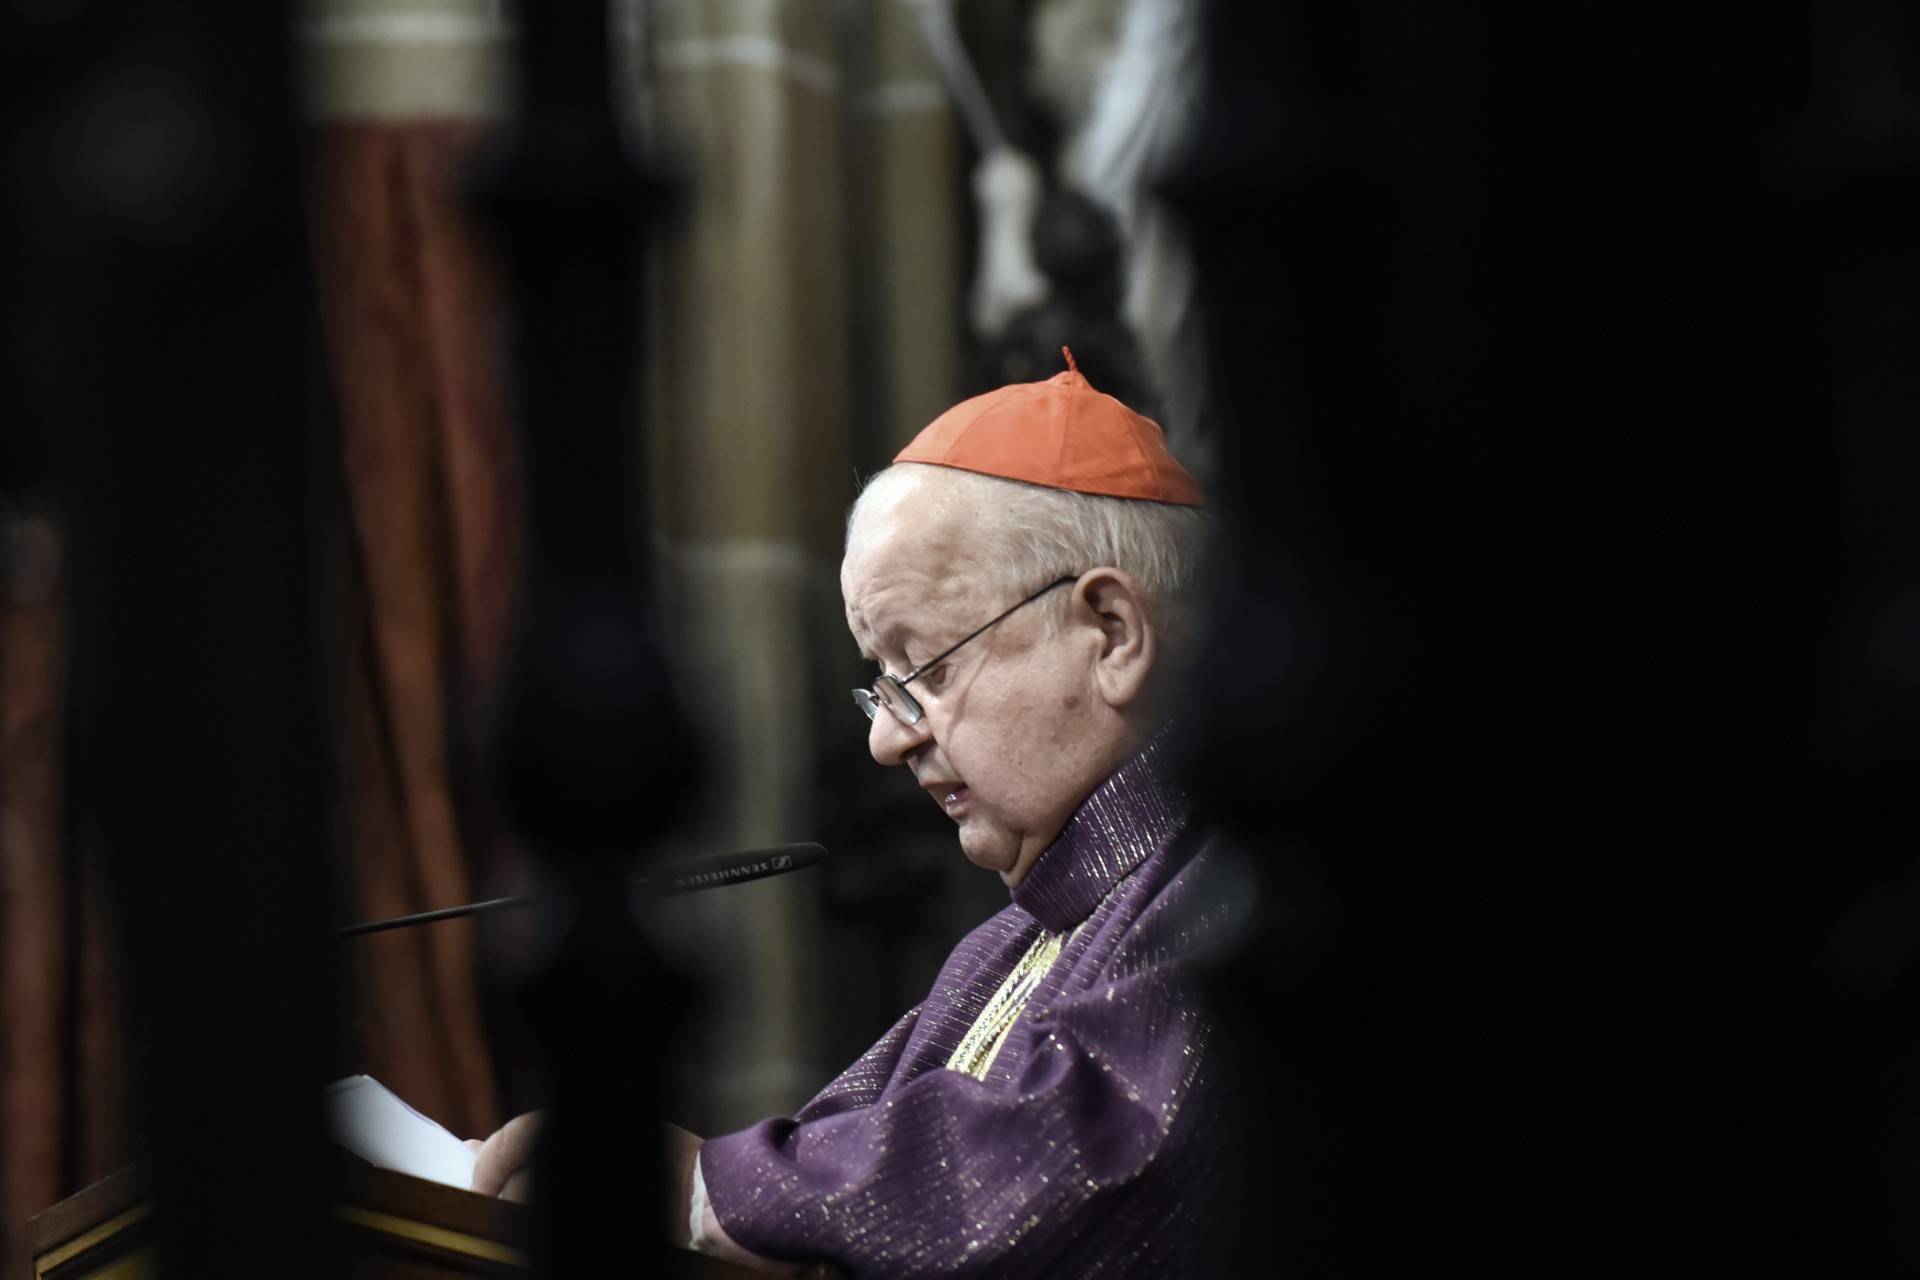 Kardynał Dziwisz: ataki na mnie powodują mój ból, ale wybaczam